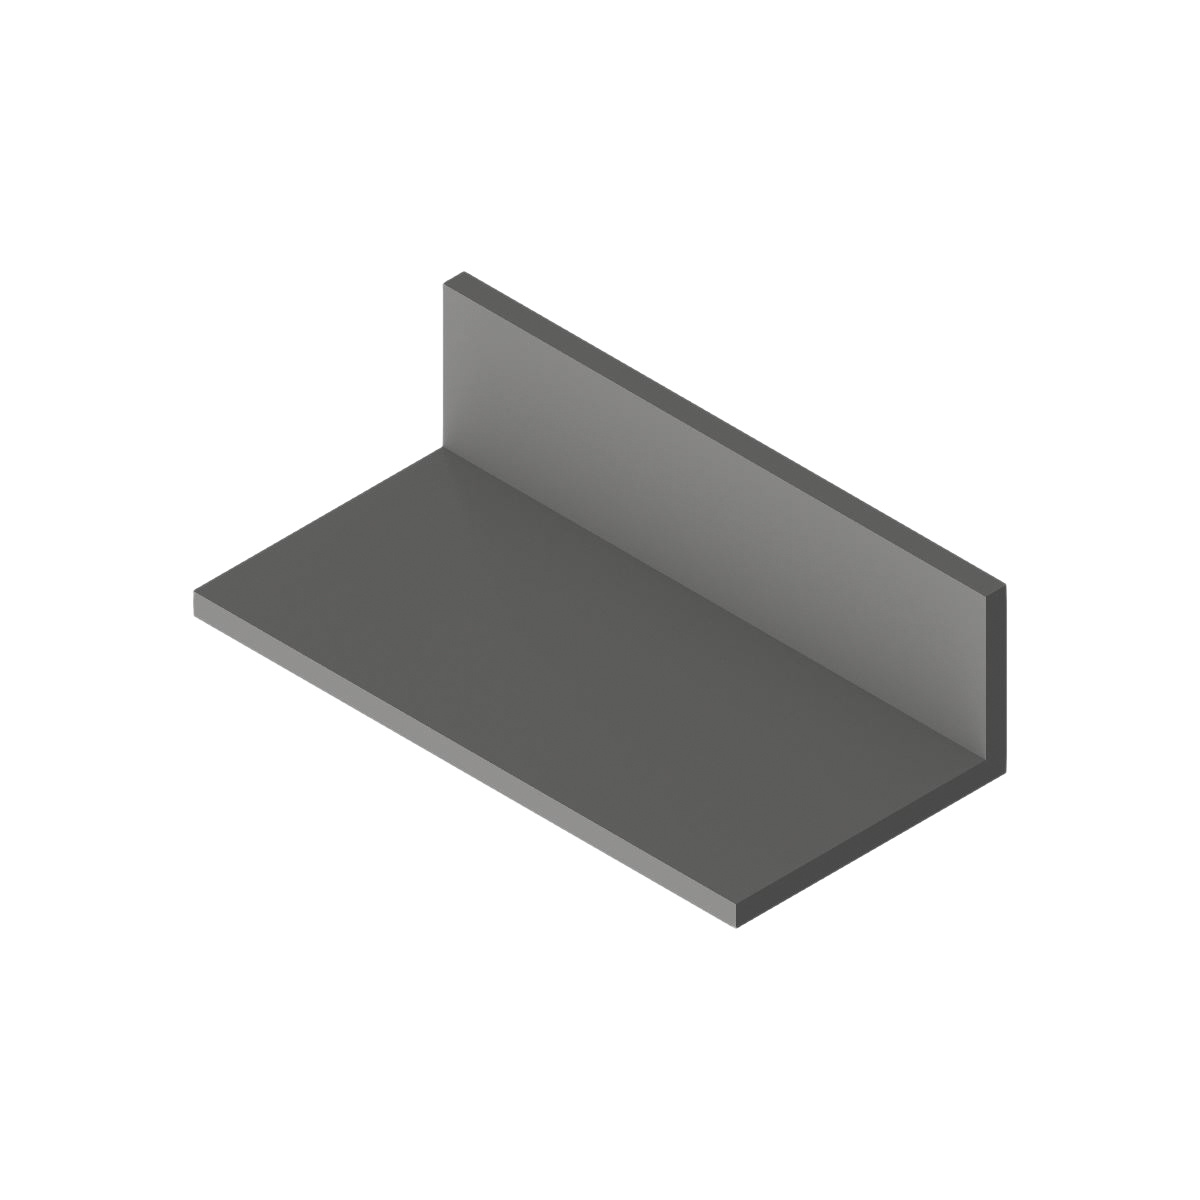 Règle en aluminium avec rebord en acier et antidérapante en caoutchouc, cm, 30, 50 cm lot de 2 cm, 30, 50 cm 